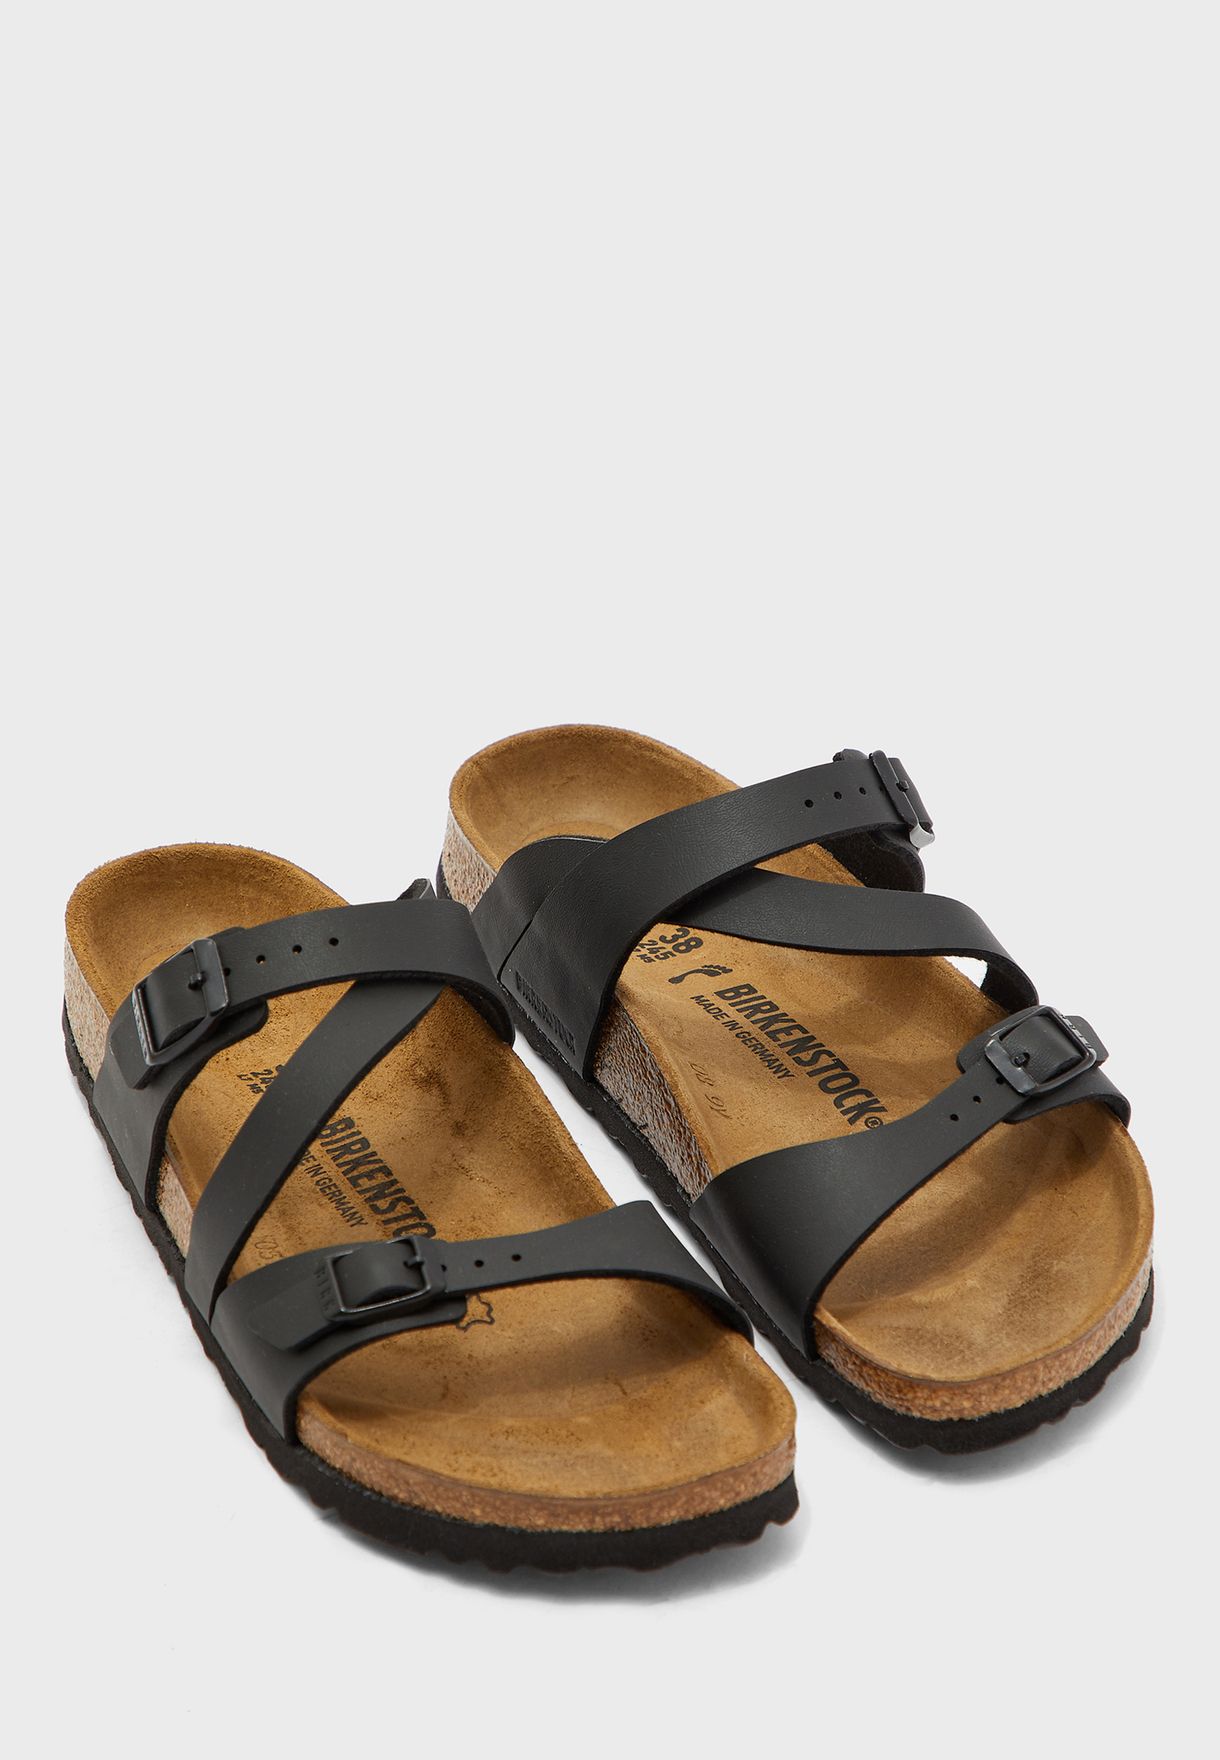 birkenstock flat sandals